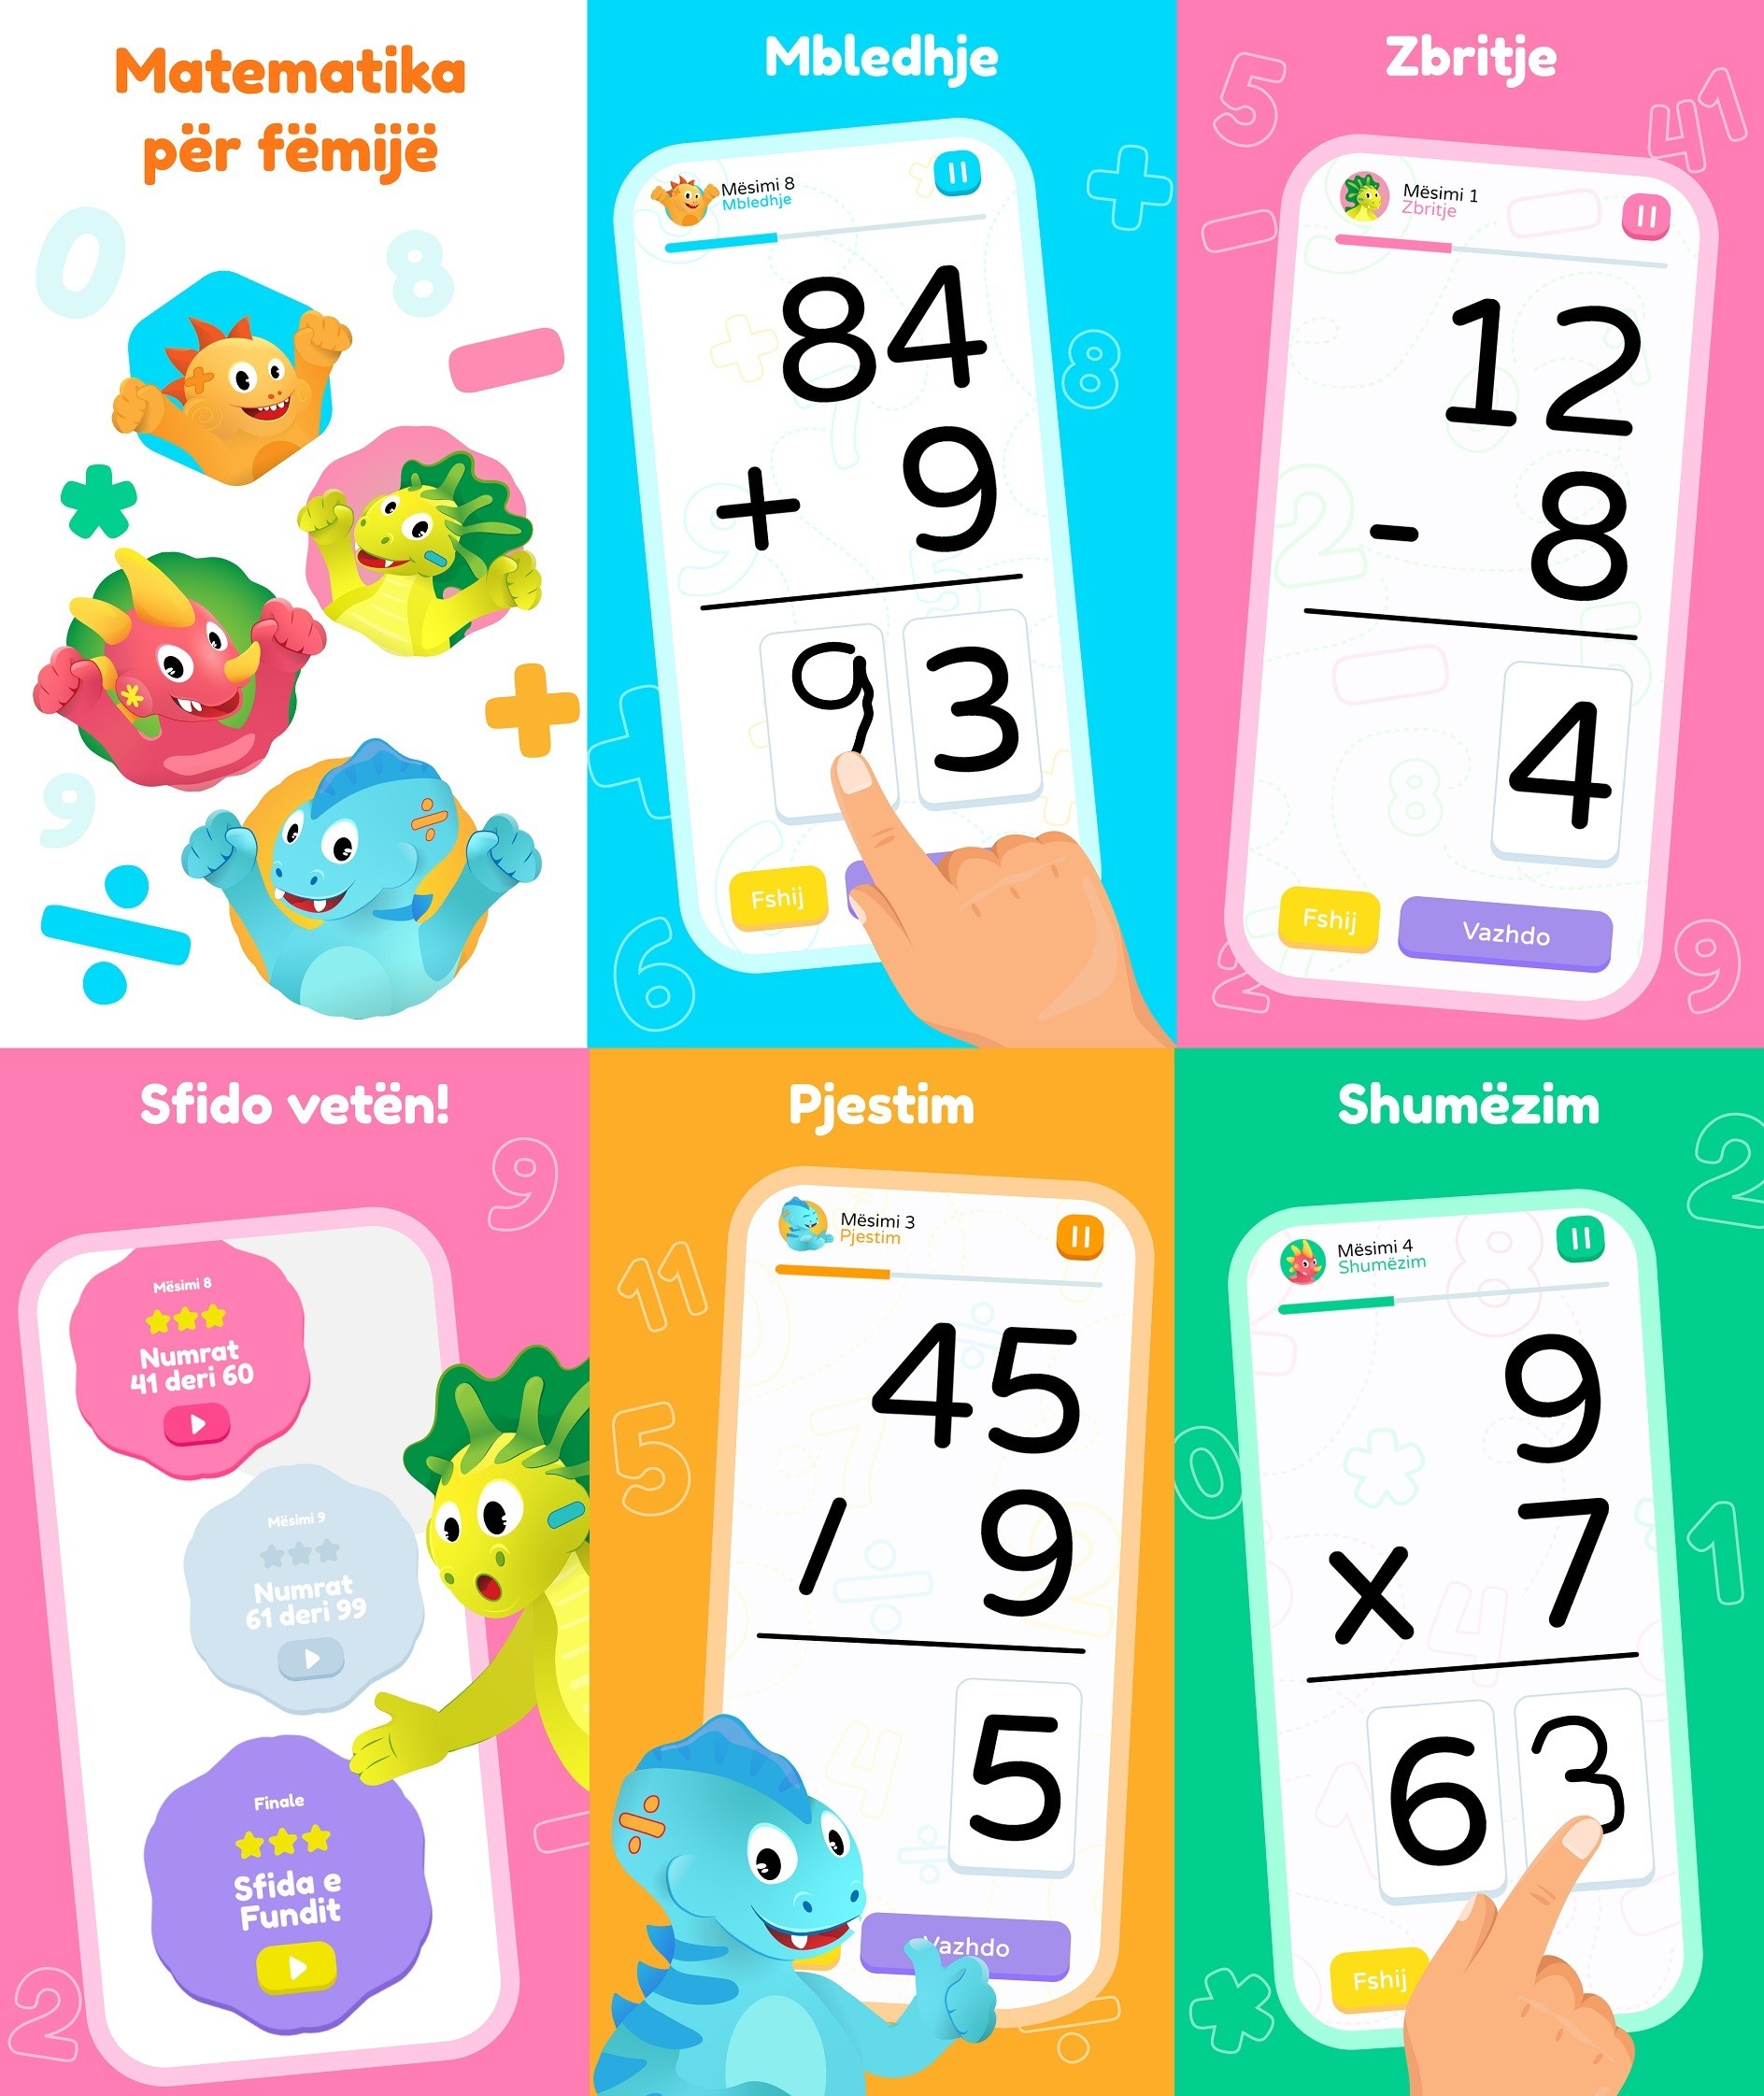 Matematika për fëmijë, tani në AppStore dhe PlayStore